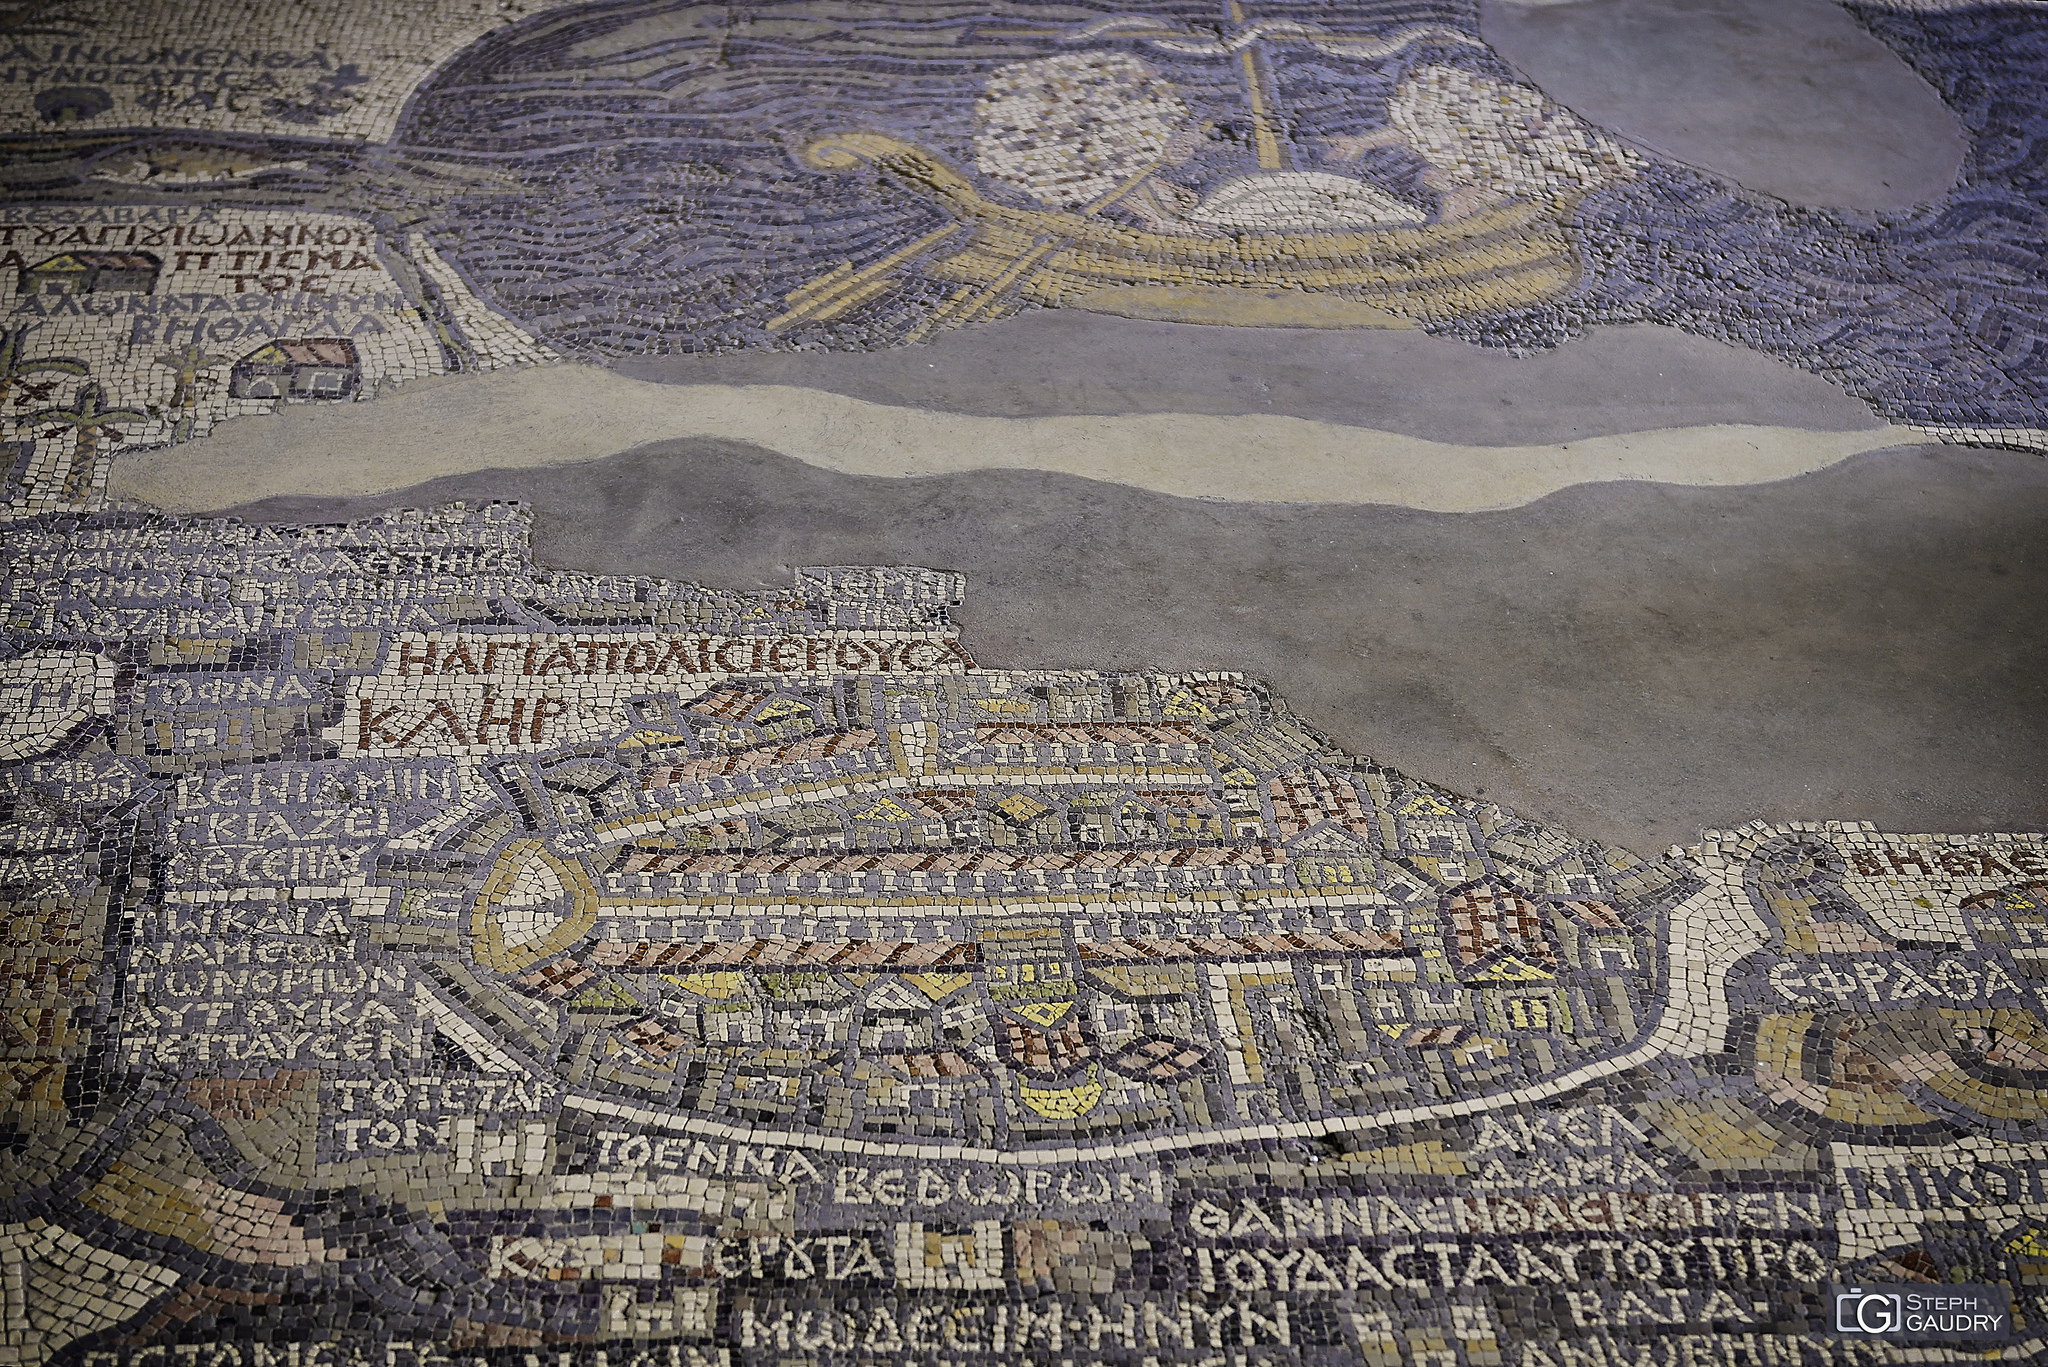 Mosaïque de la carte de Madaba - Jerusalem [Klik om de diavoorstelling te starten]